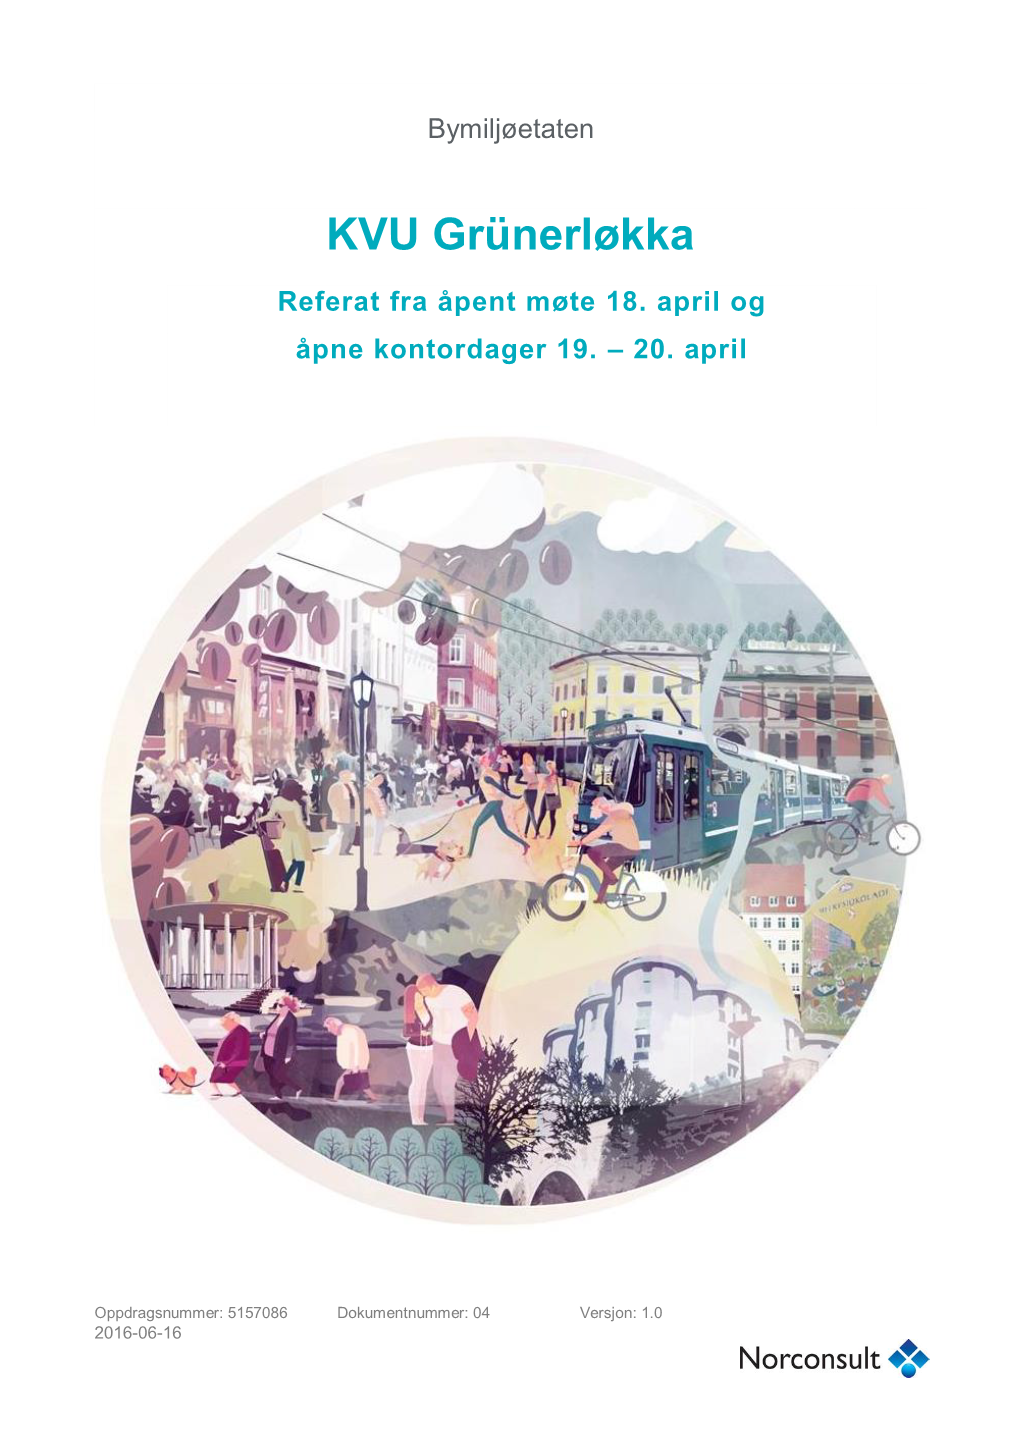 KVU Grünerløkka